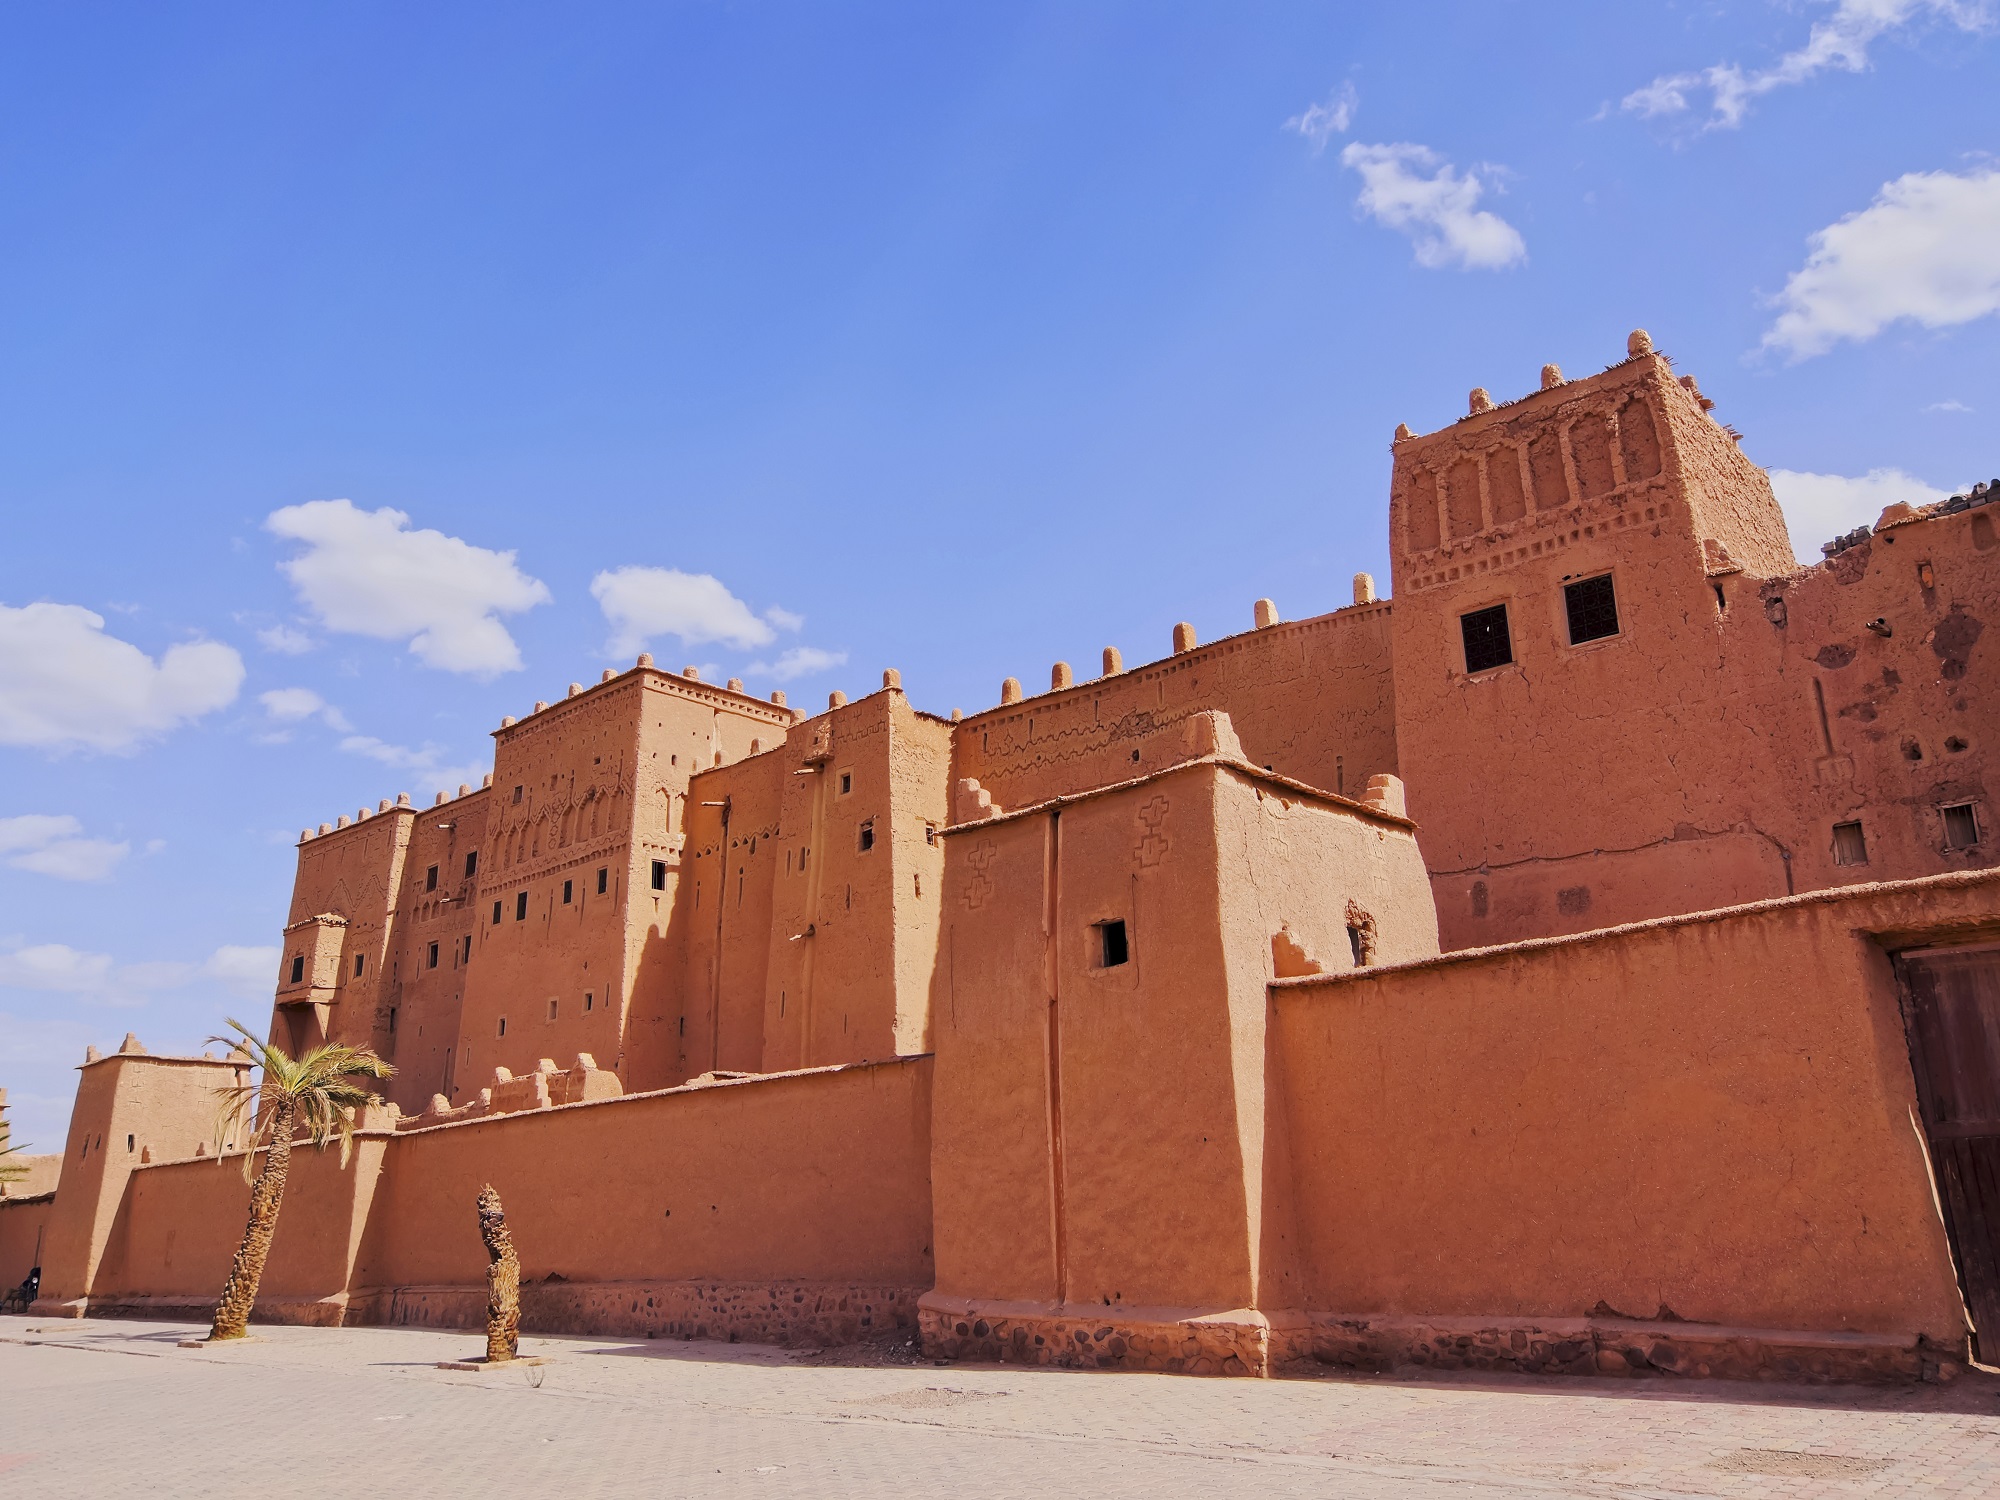 Day 3 Erg Chigaga - Foum zguid - Taznakht - Ouarzazate